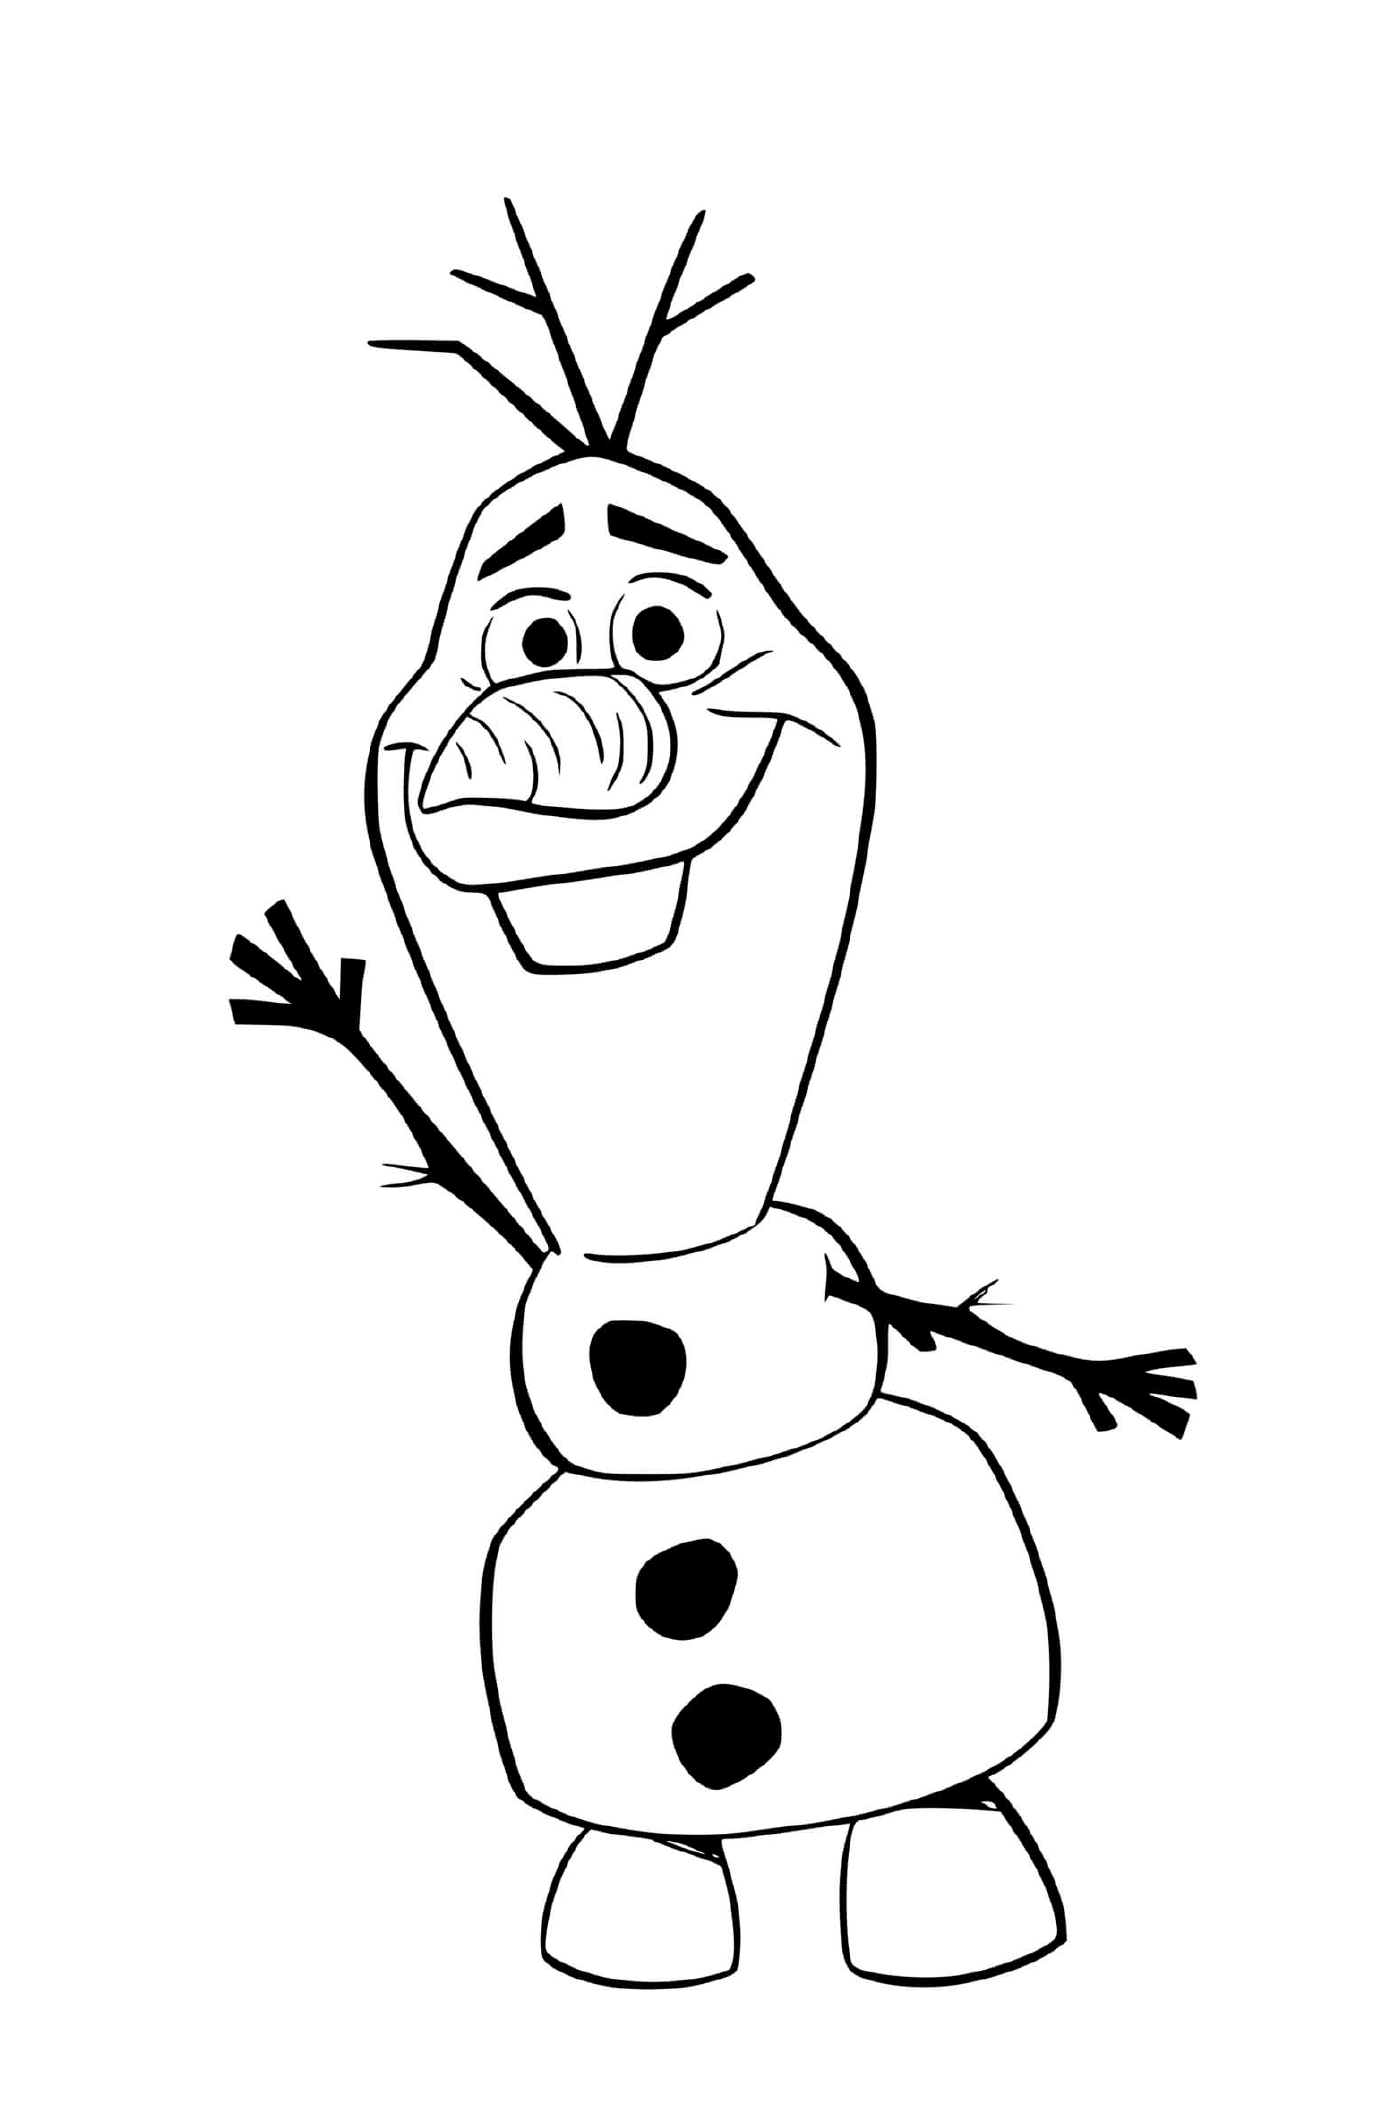 Olaf au royaume dArendelle